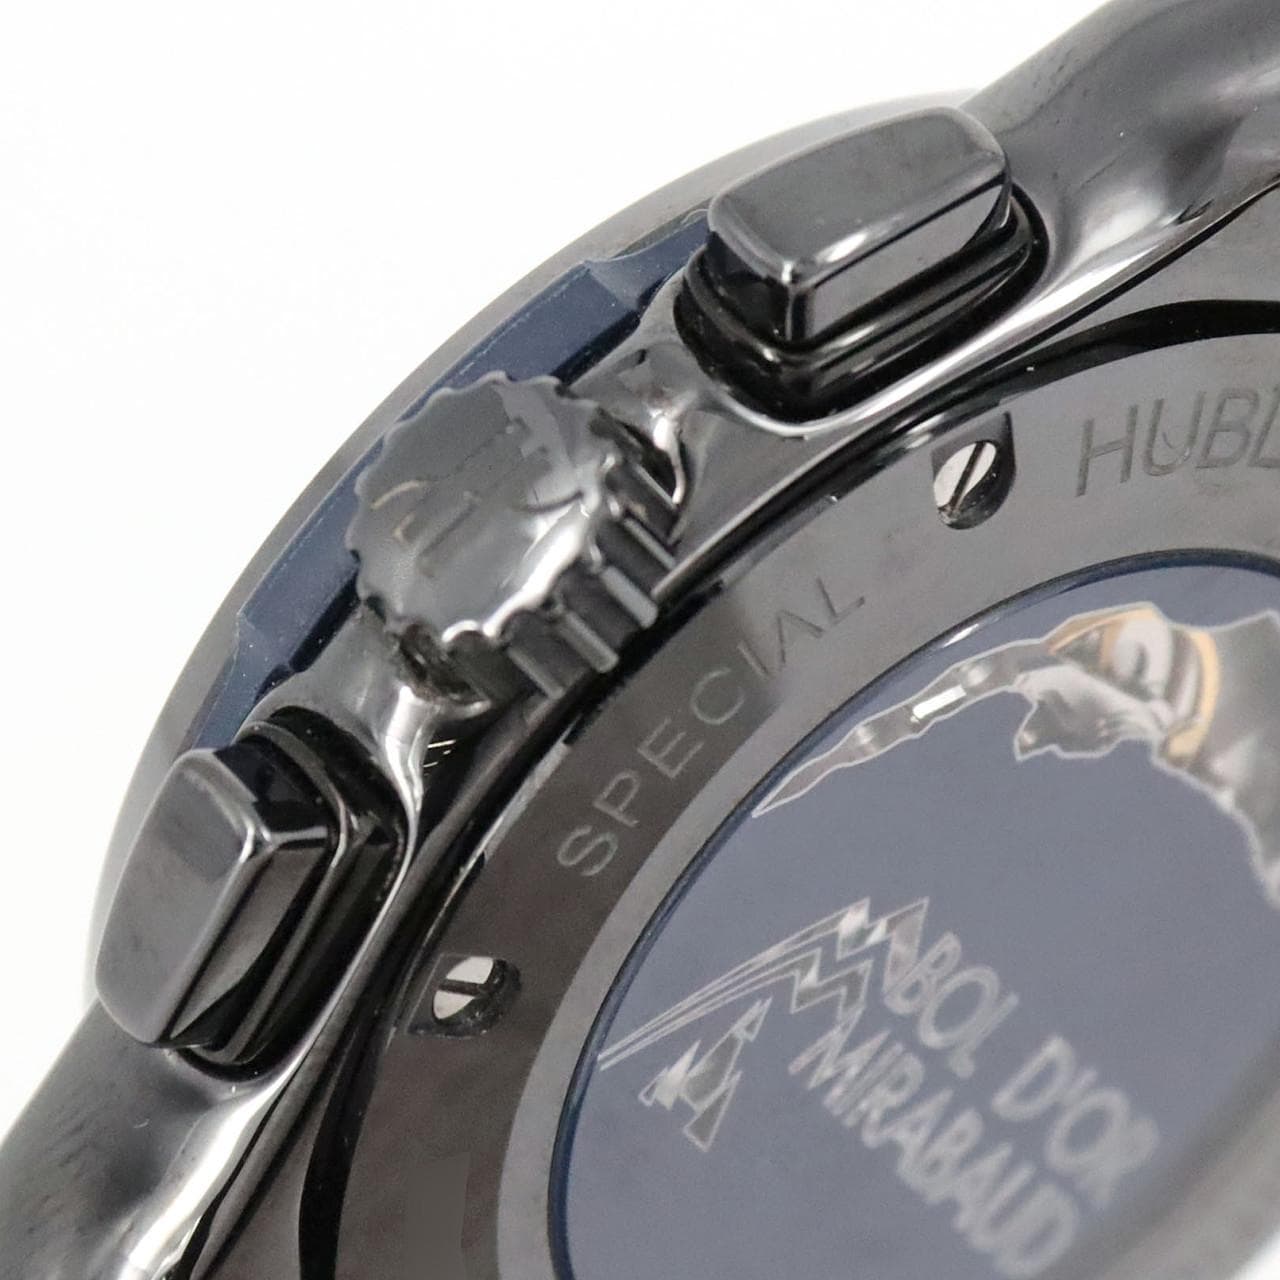 Hublot Classic FUSION Chronograph Bordeaux Mirabeau 521.CM.7070.NR.BOM Ceramic Automatic